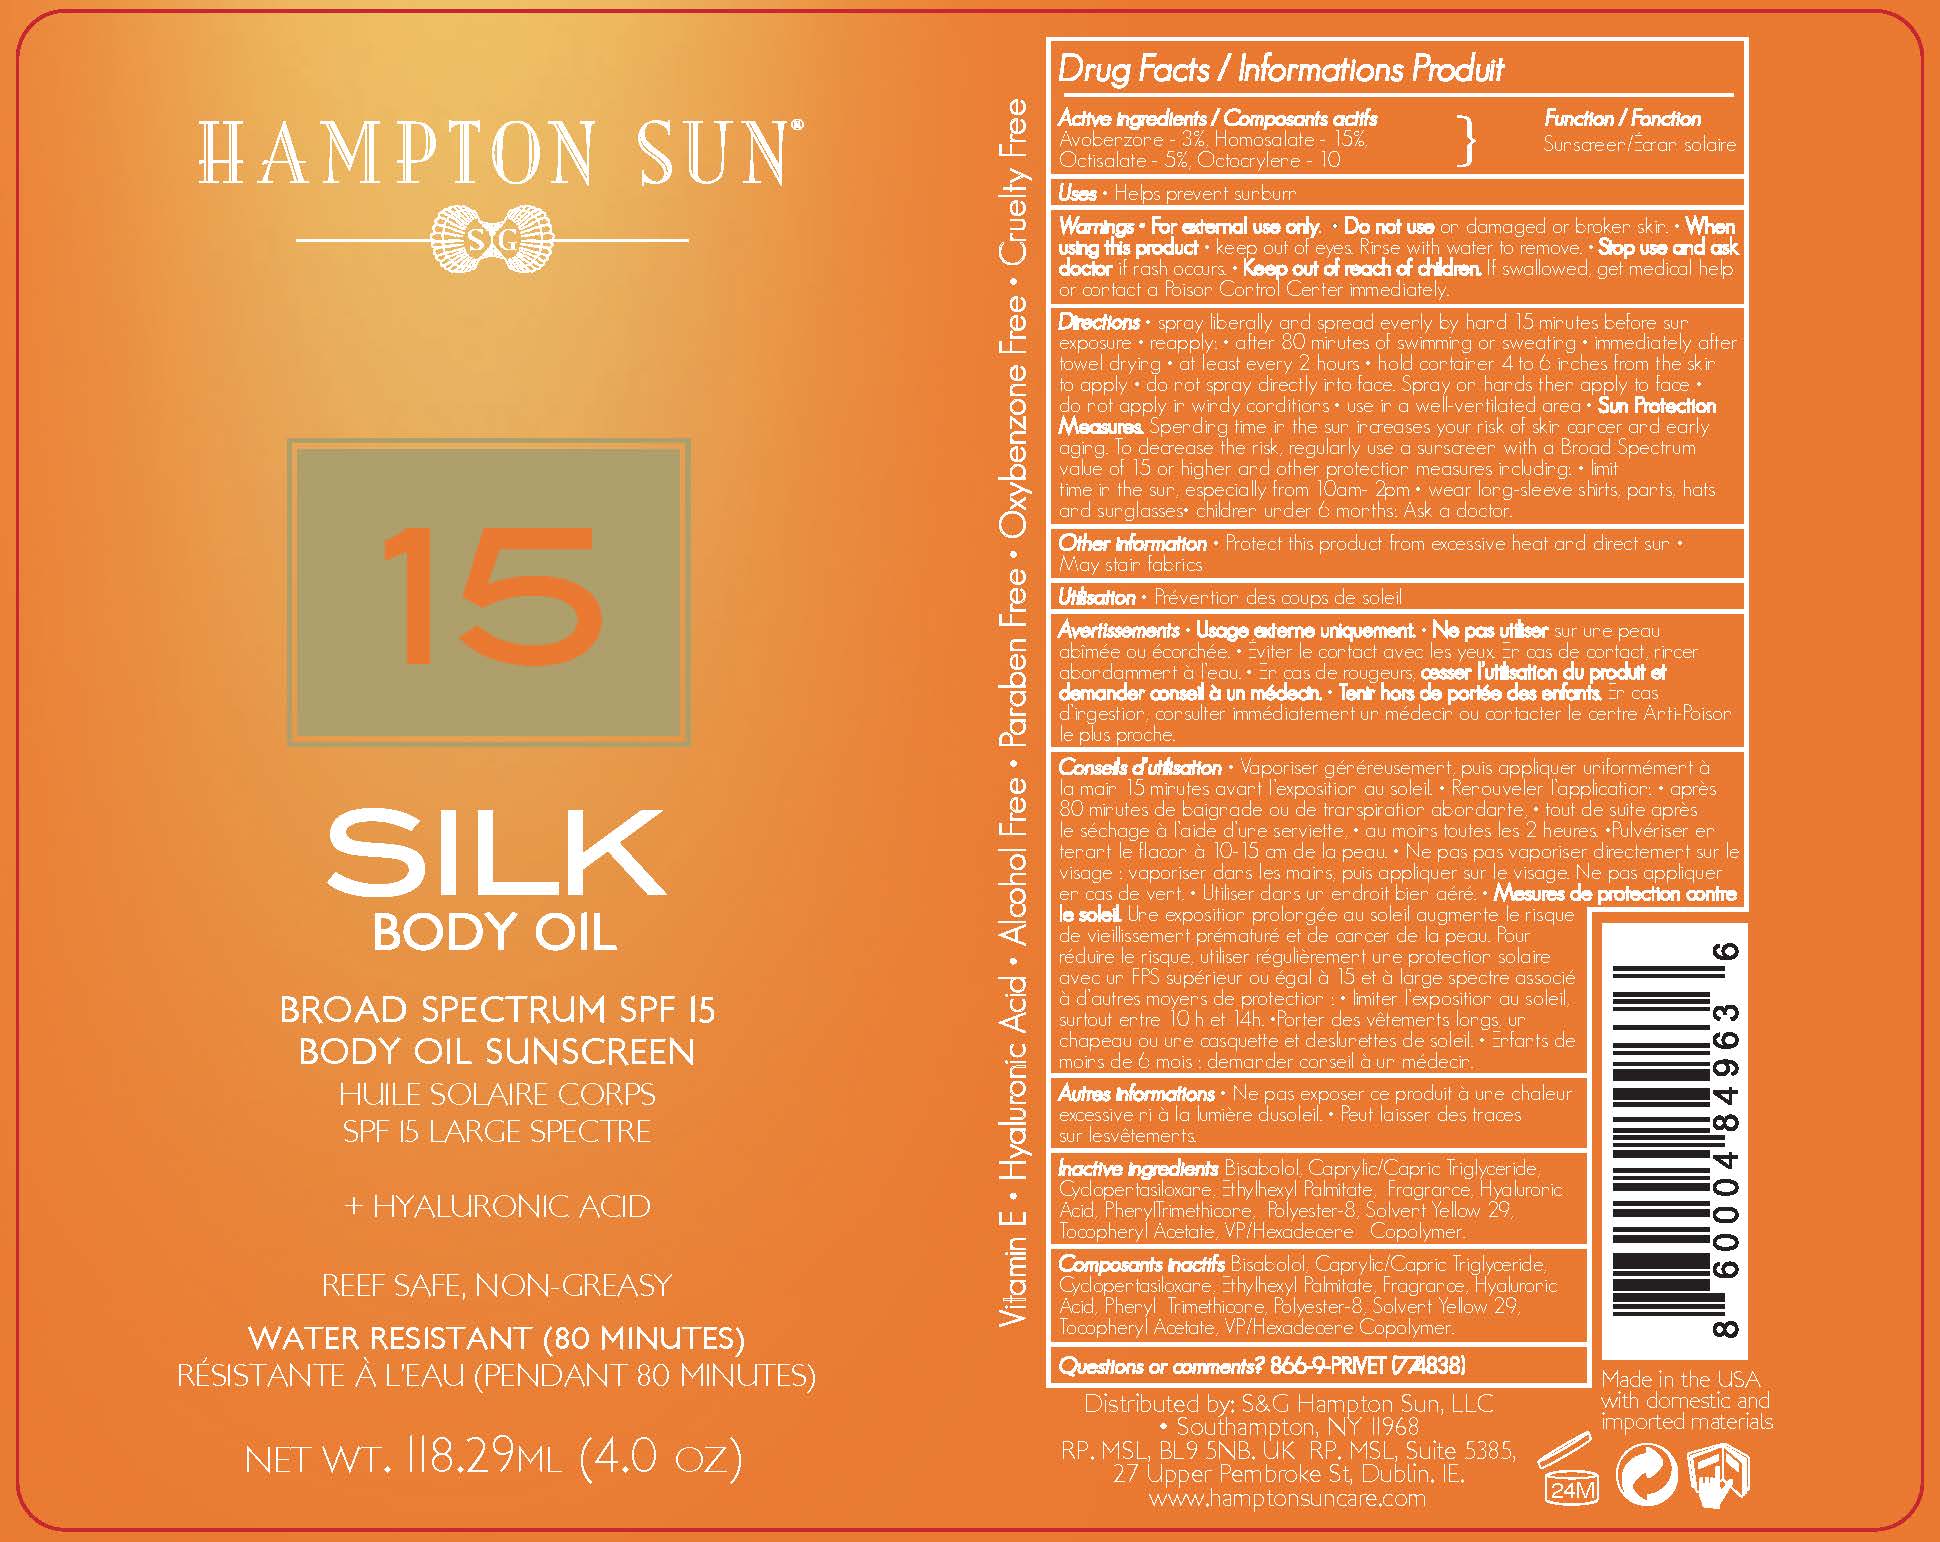 Hampton Sun SPF 15 Silk